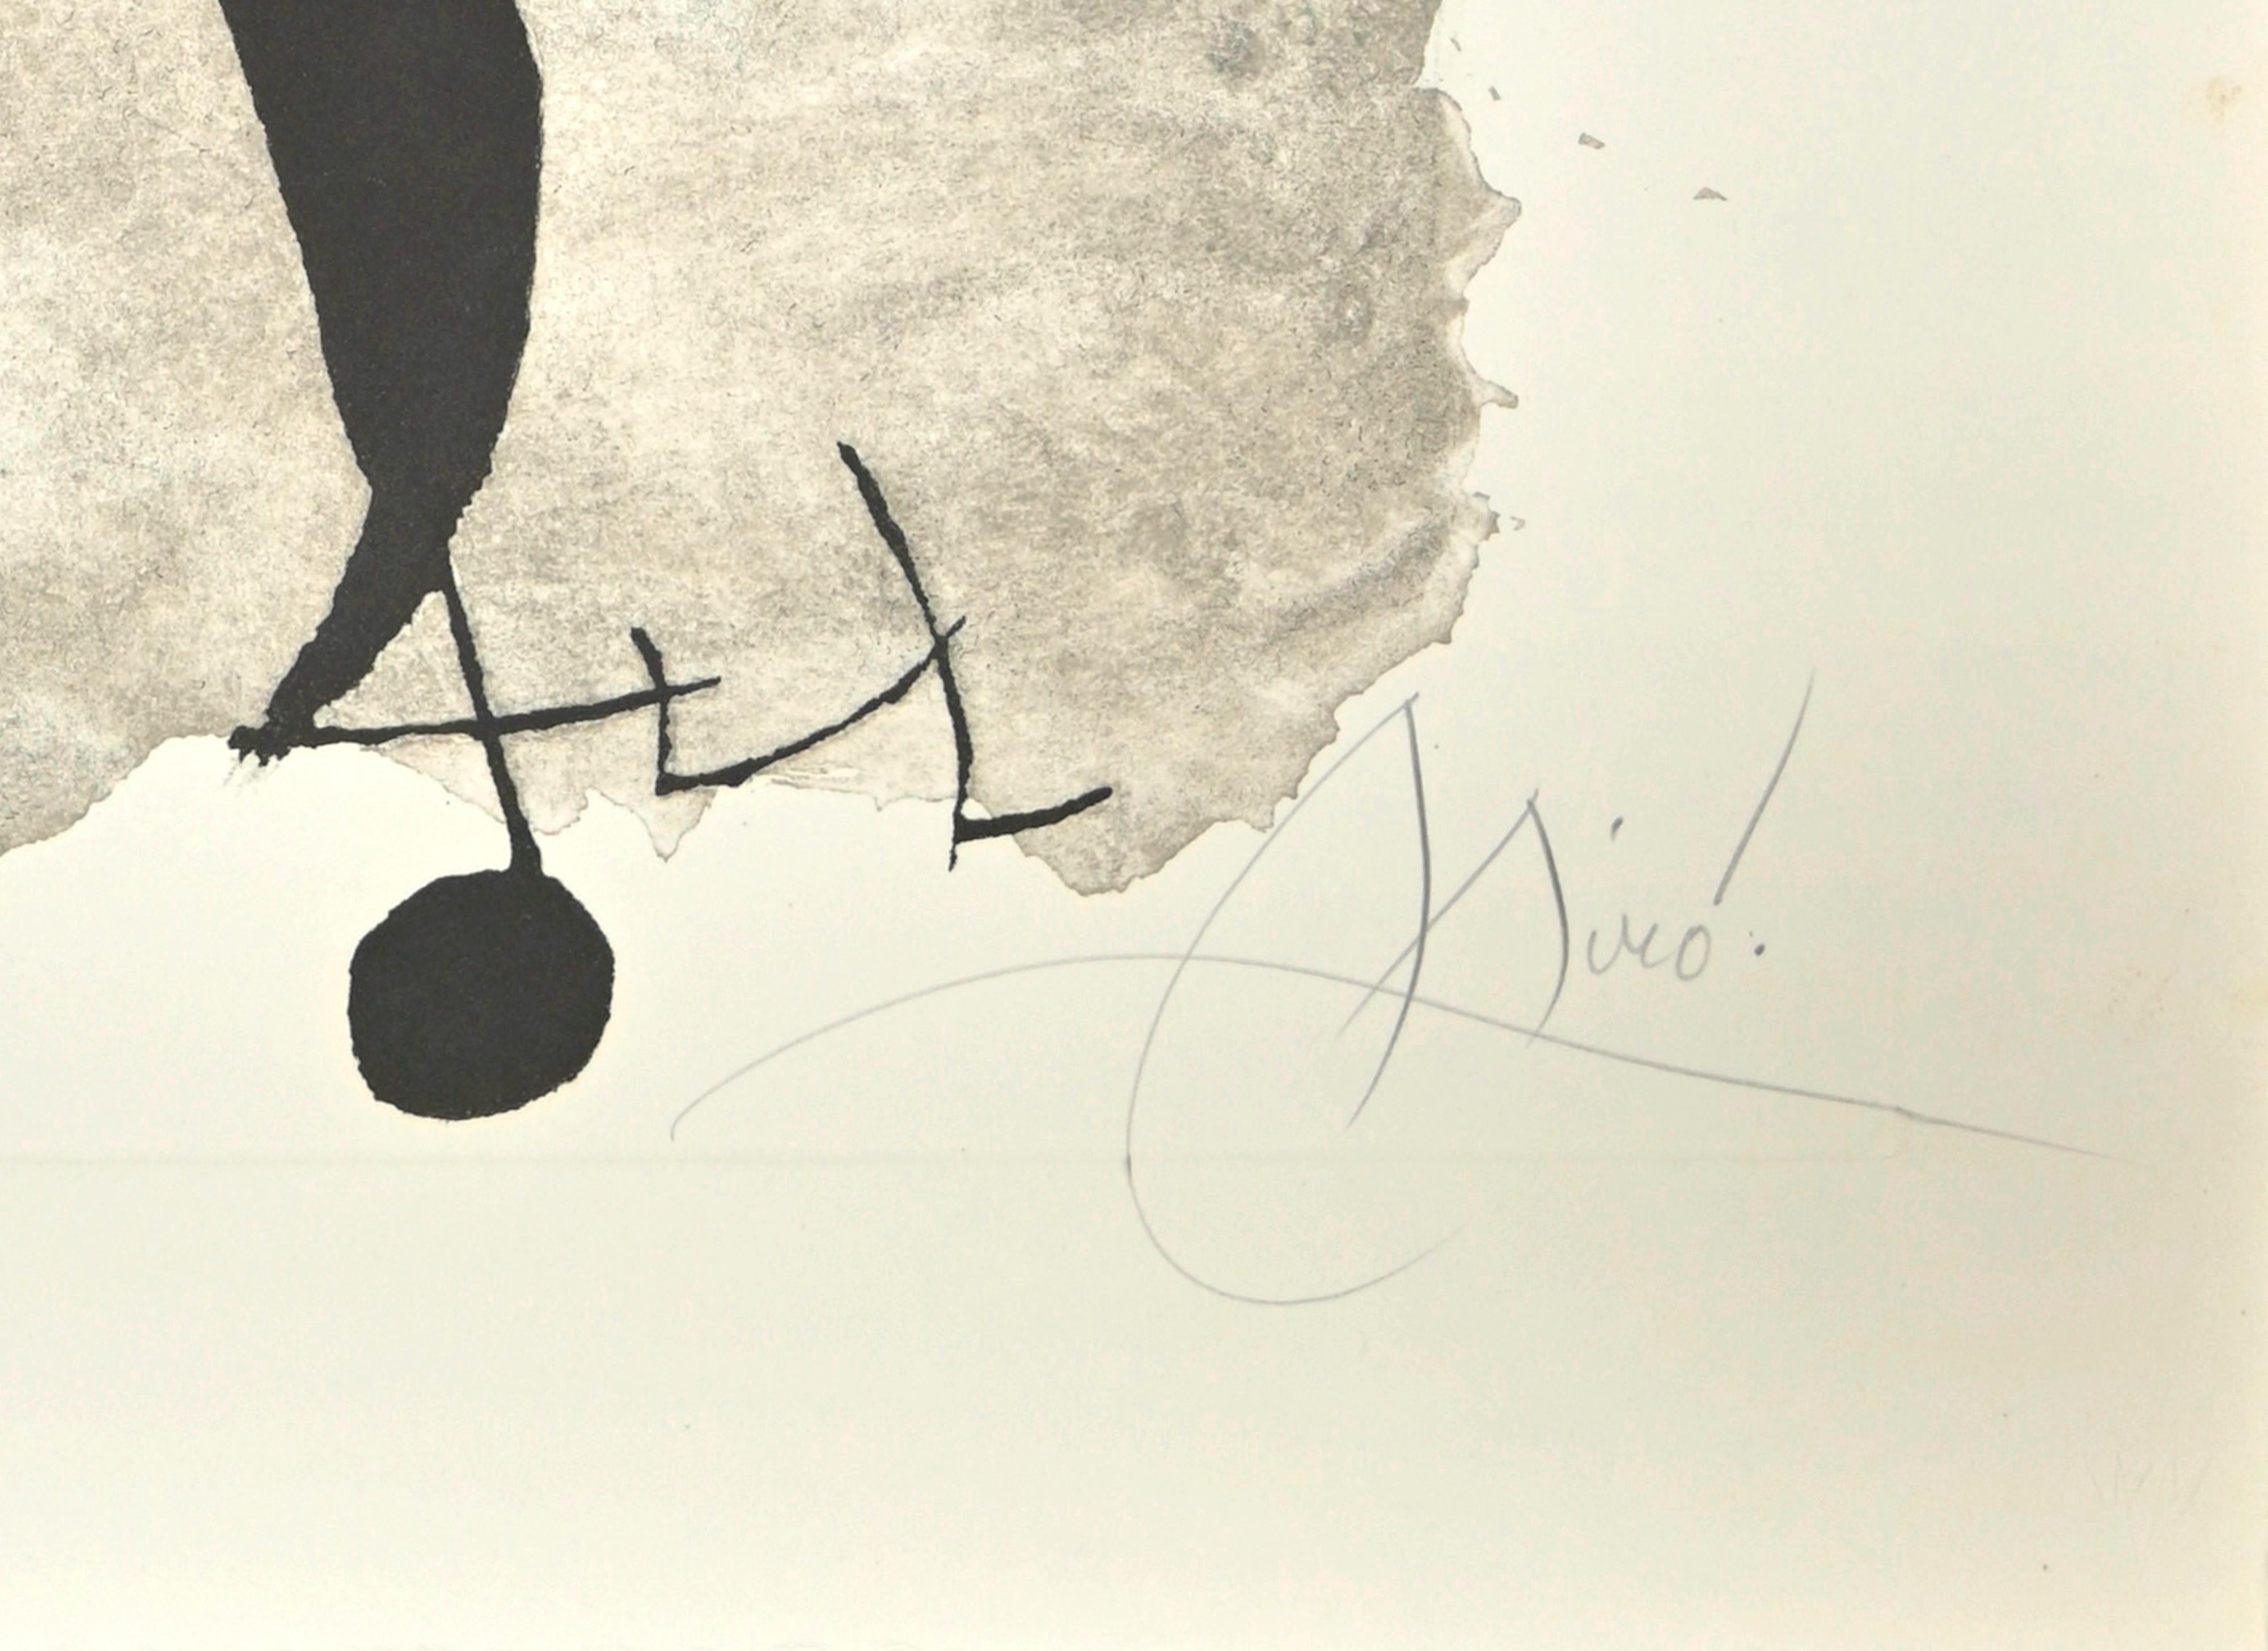 Für Alberti, für Spanien! - Radierung von Joan Mirò - 1975 – Print von Joan Miró